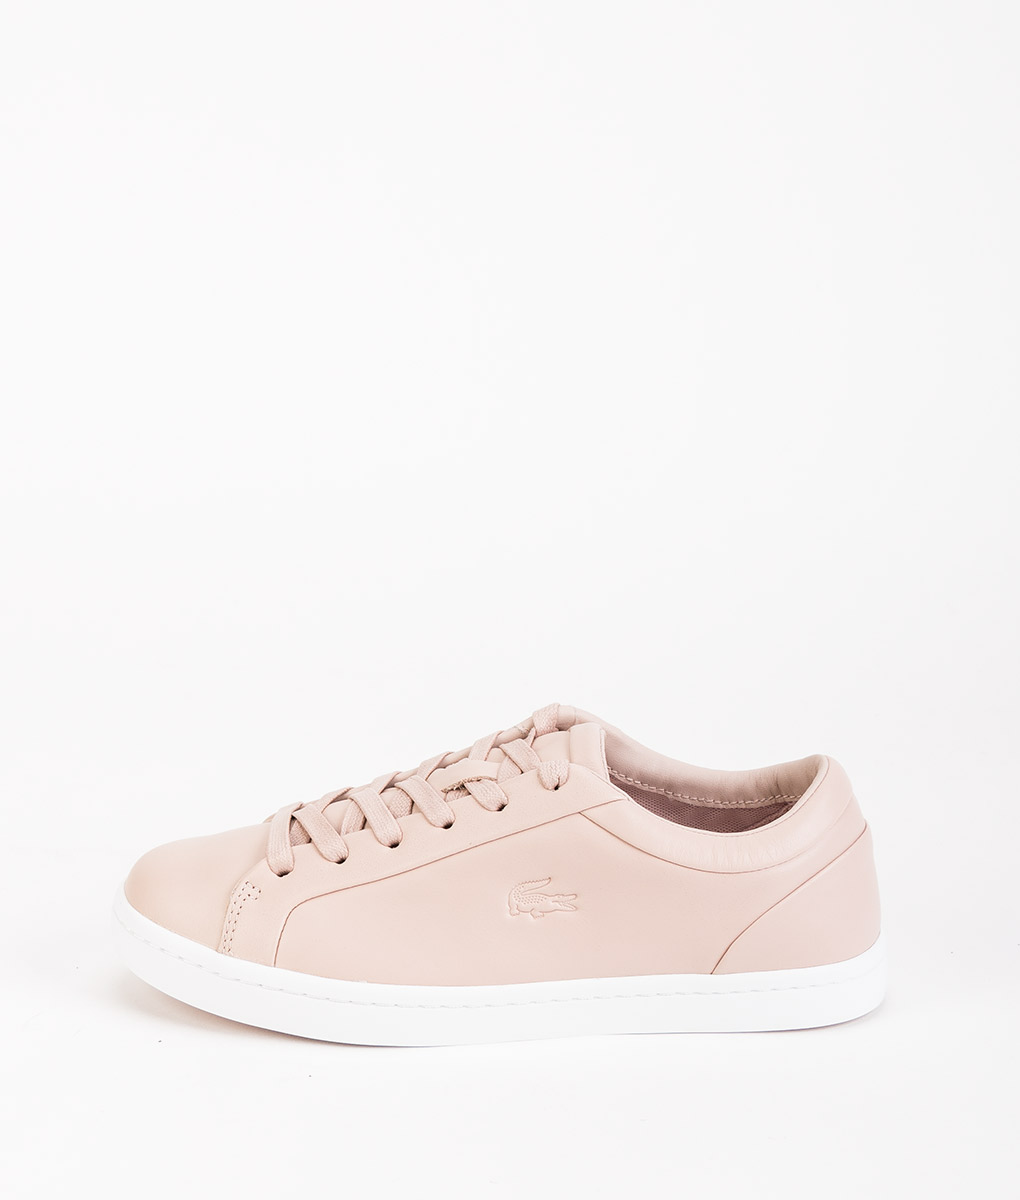 LACOSTE Women Sneakers 316,Light Pink 149.99 | T6/8